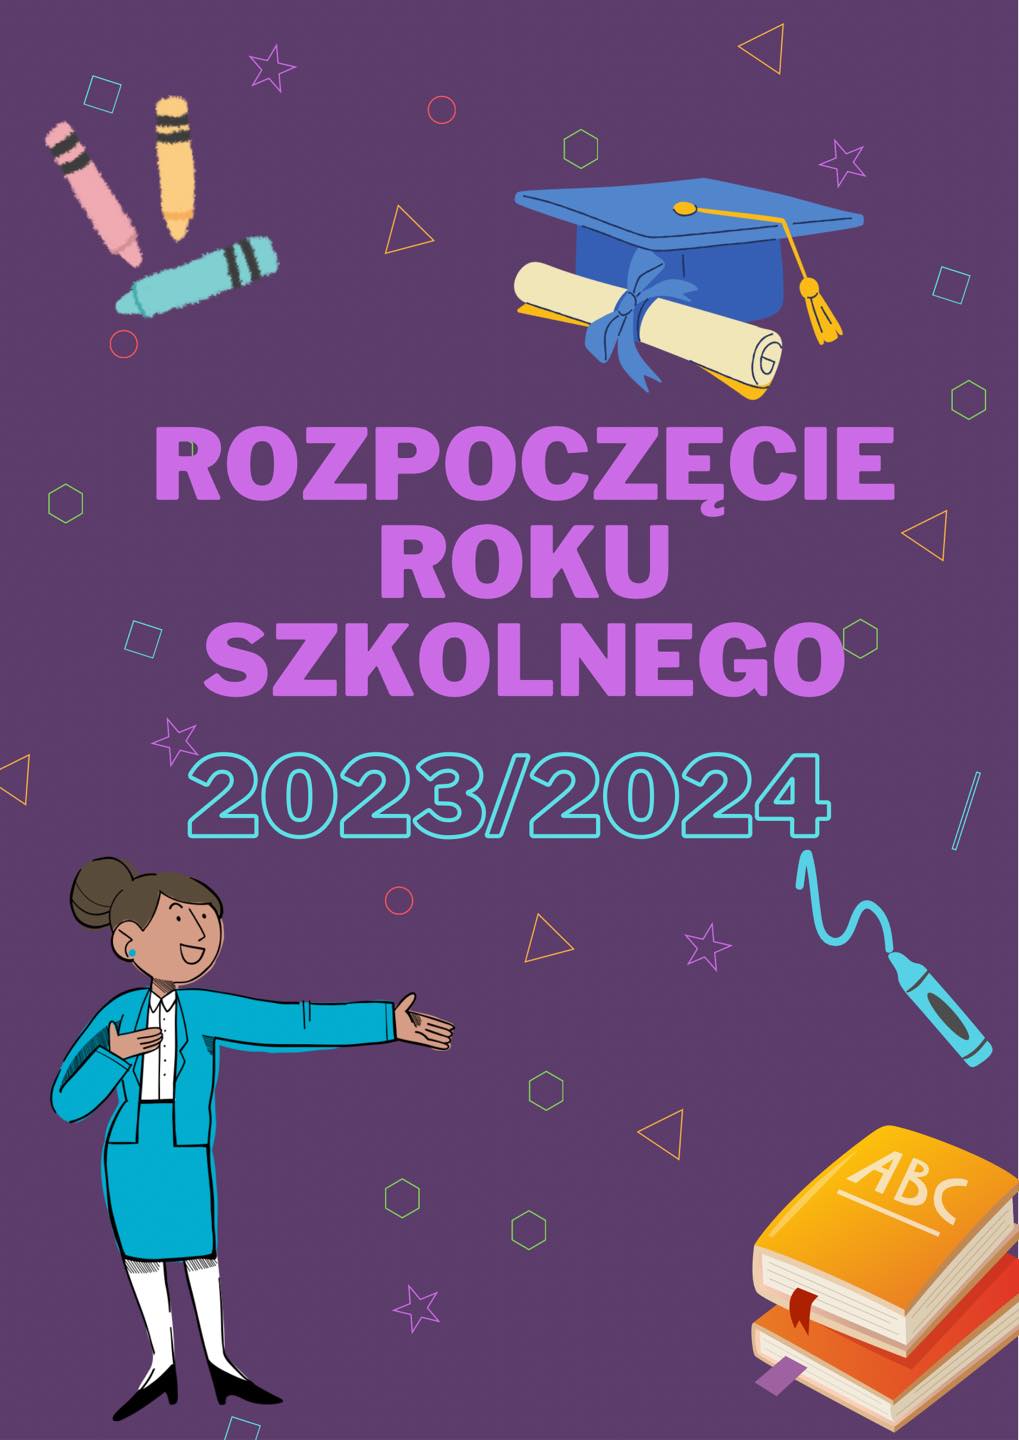 Uroczyste rozpoczęcie roku szkolnego 2023/2024